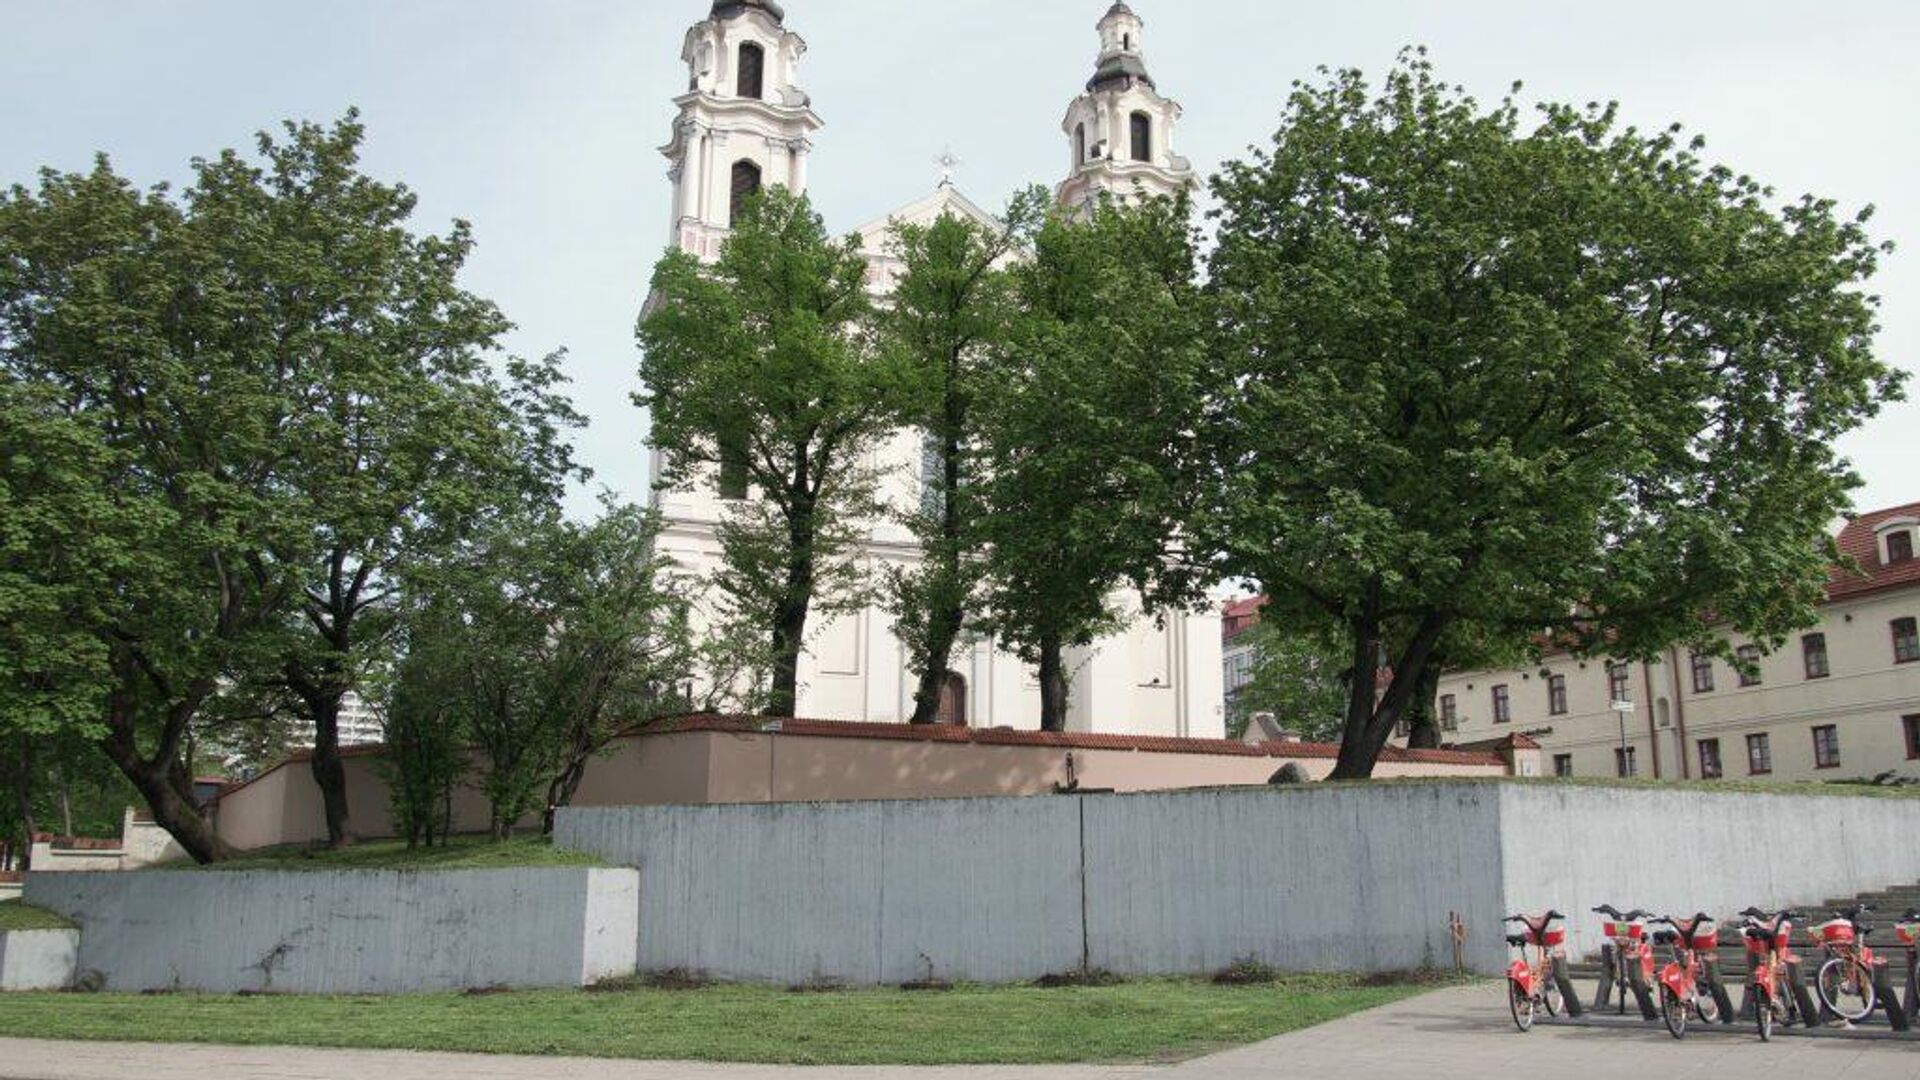 Šv. Rapolo bažnyčia Vilniuje - Sputnik Lietuva, 1920, 27.05.2021